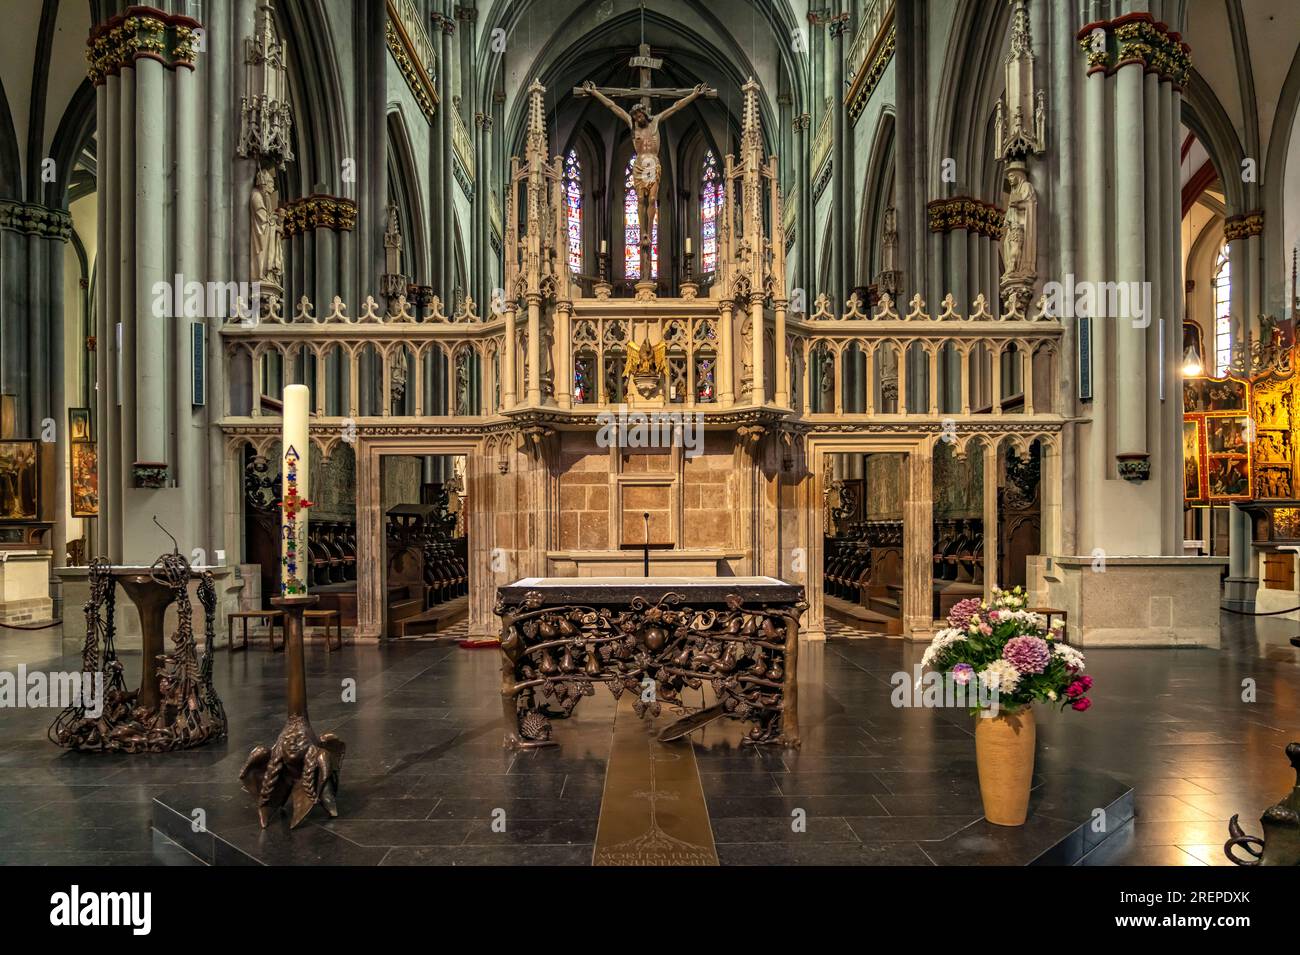 Innenraum der katholischen Kirche St. Viktor in Xanten, Niederrhein, Nordrhein-Westfalen, Deutschland, Europa |  Xanten Cathedral or St. Victor's Cath Stock Photo